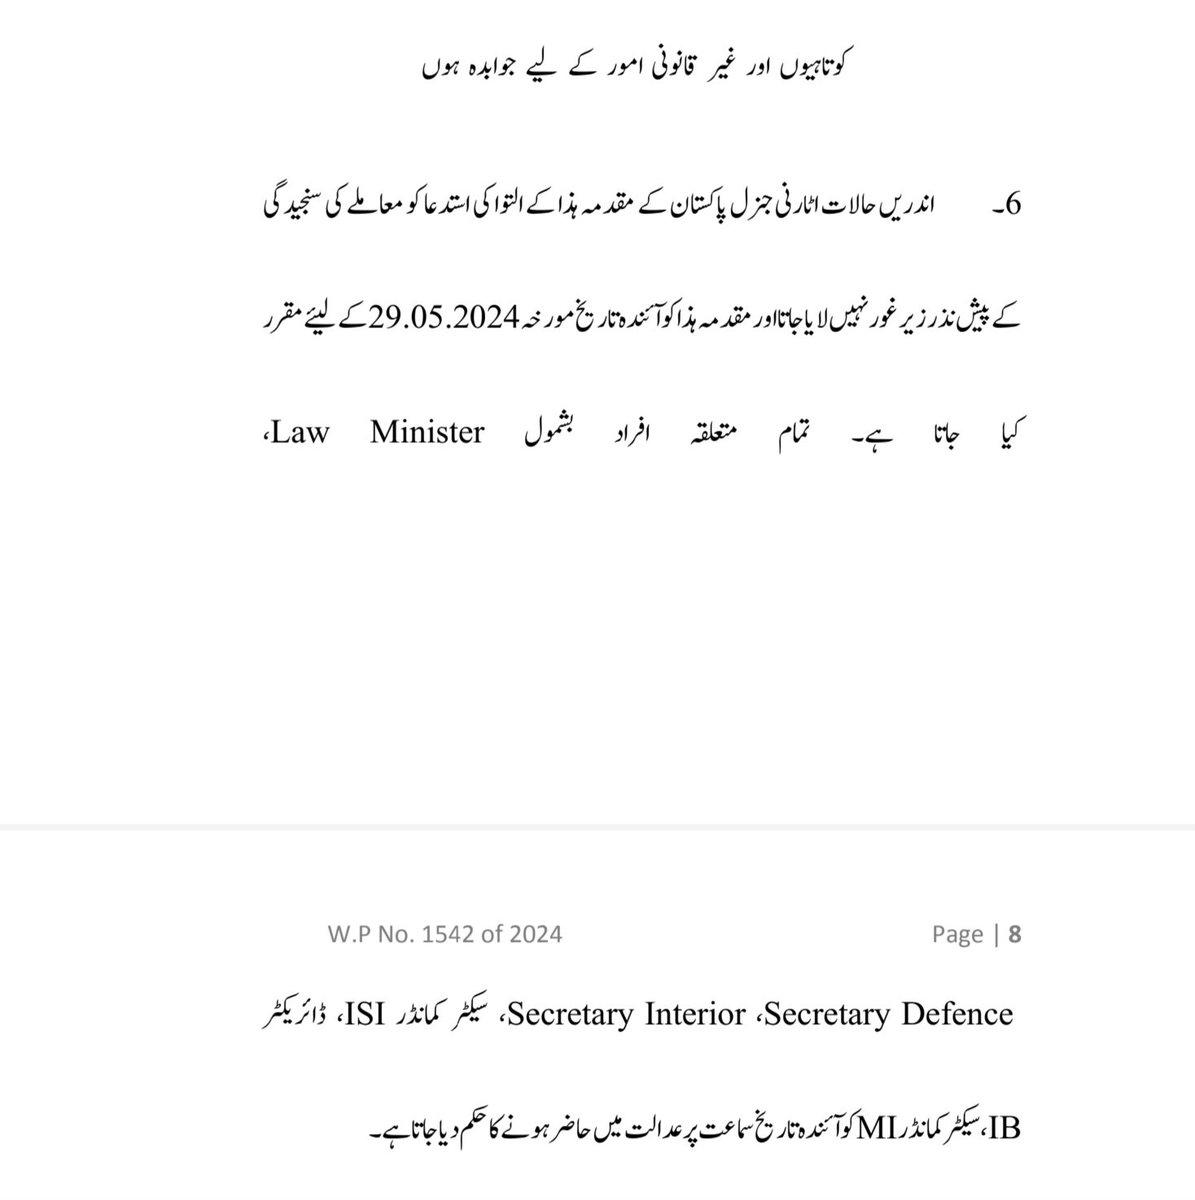 شاعر احمد فرہاد کیس؛ جسٹس محسن کیانی نے آئندہ سماعت 29مئی کیلئے وزیر قانون، سیکٹر کمانڈر ISI ، سیکٹر کمانڈر MI ، ڈائریکٹر IB کو طلب کر لیا۔۔۔۔!